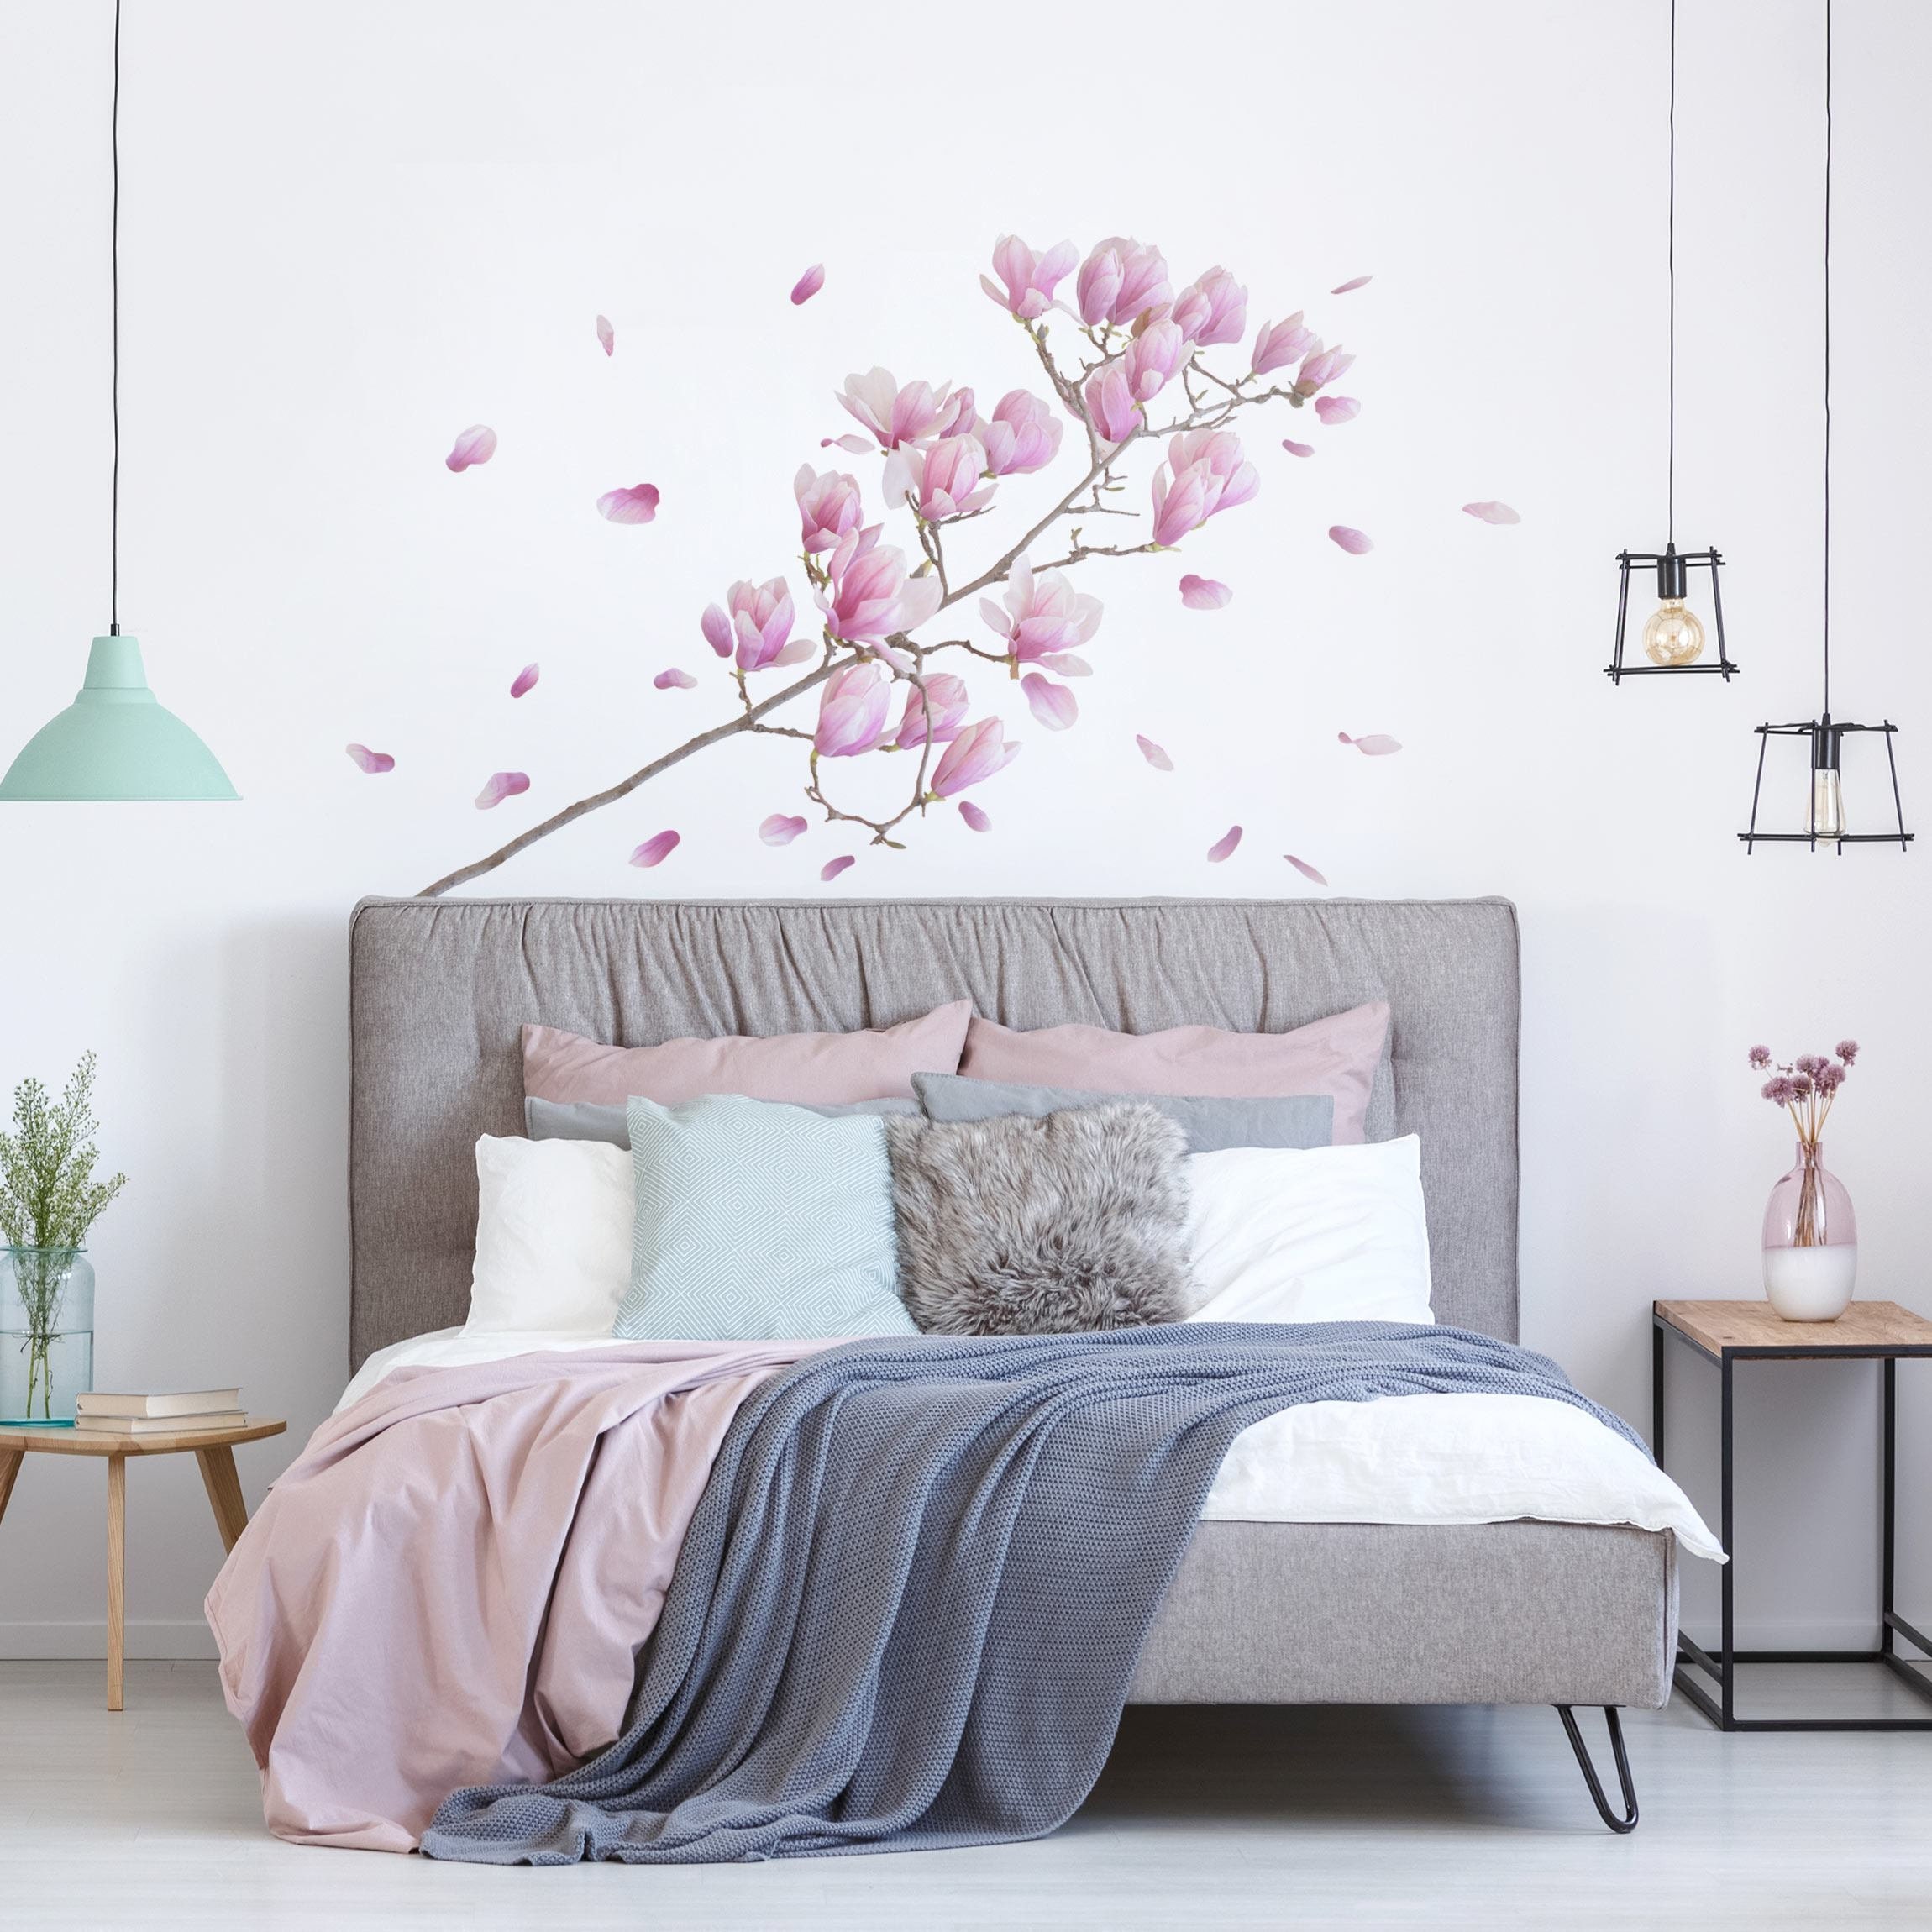 Vinilo dormitorio magnolia para pared - TenVinilo